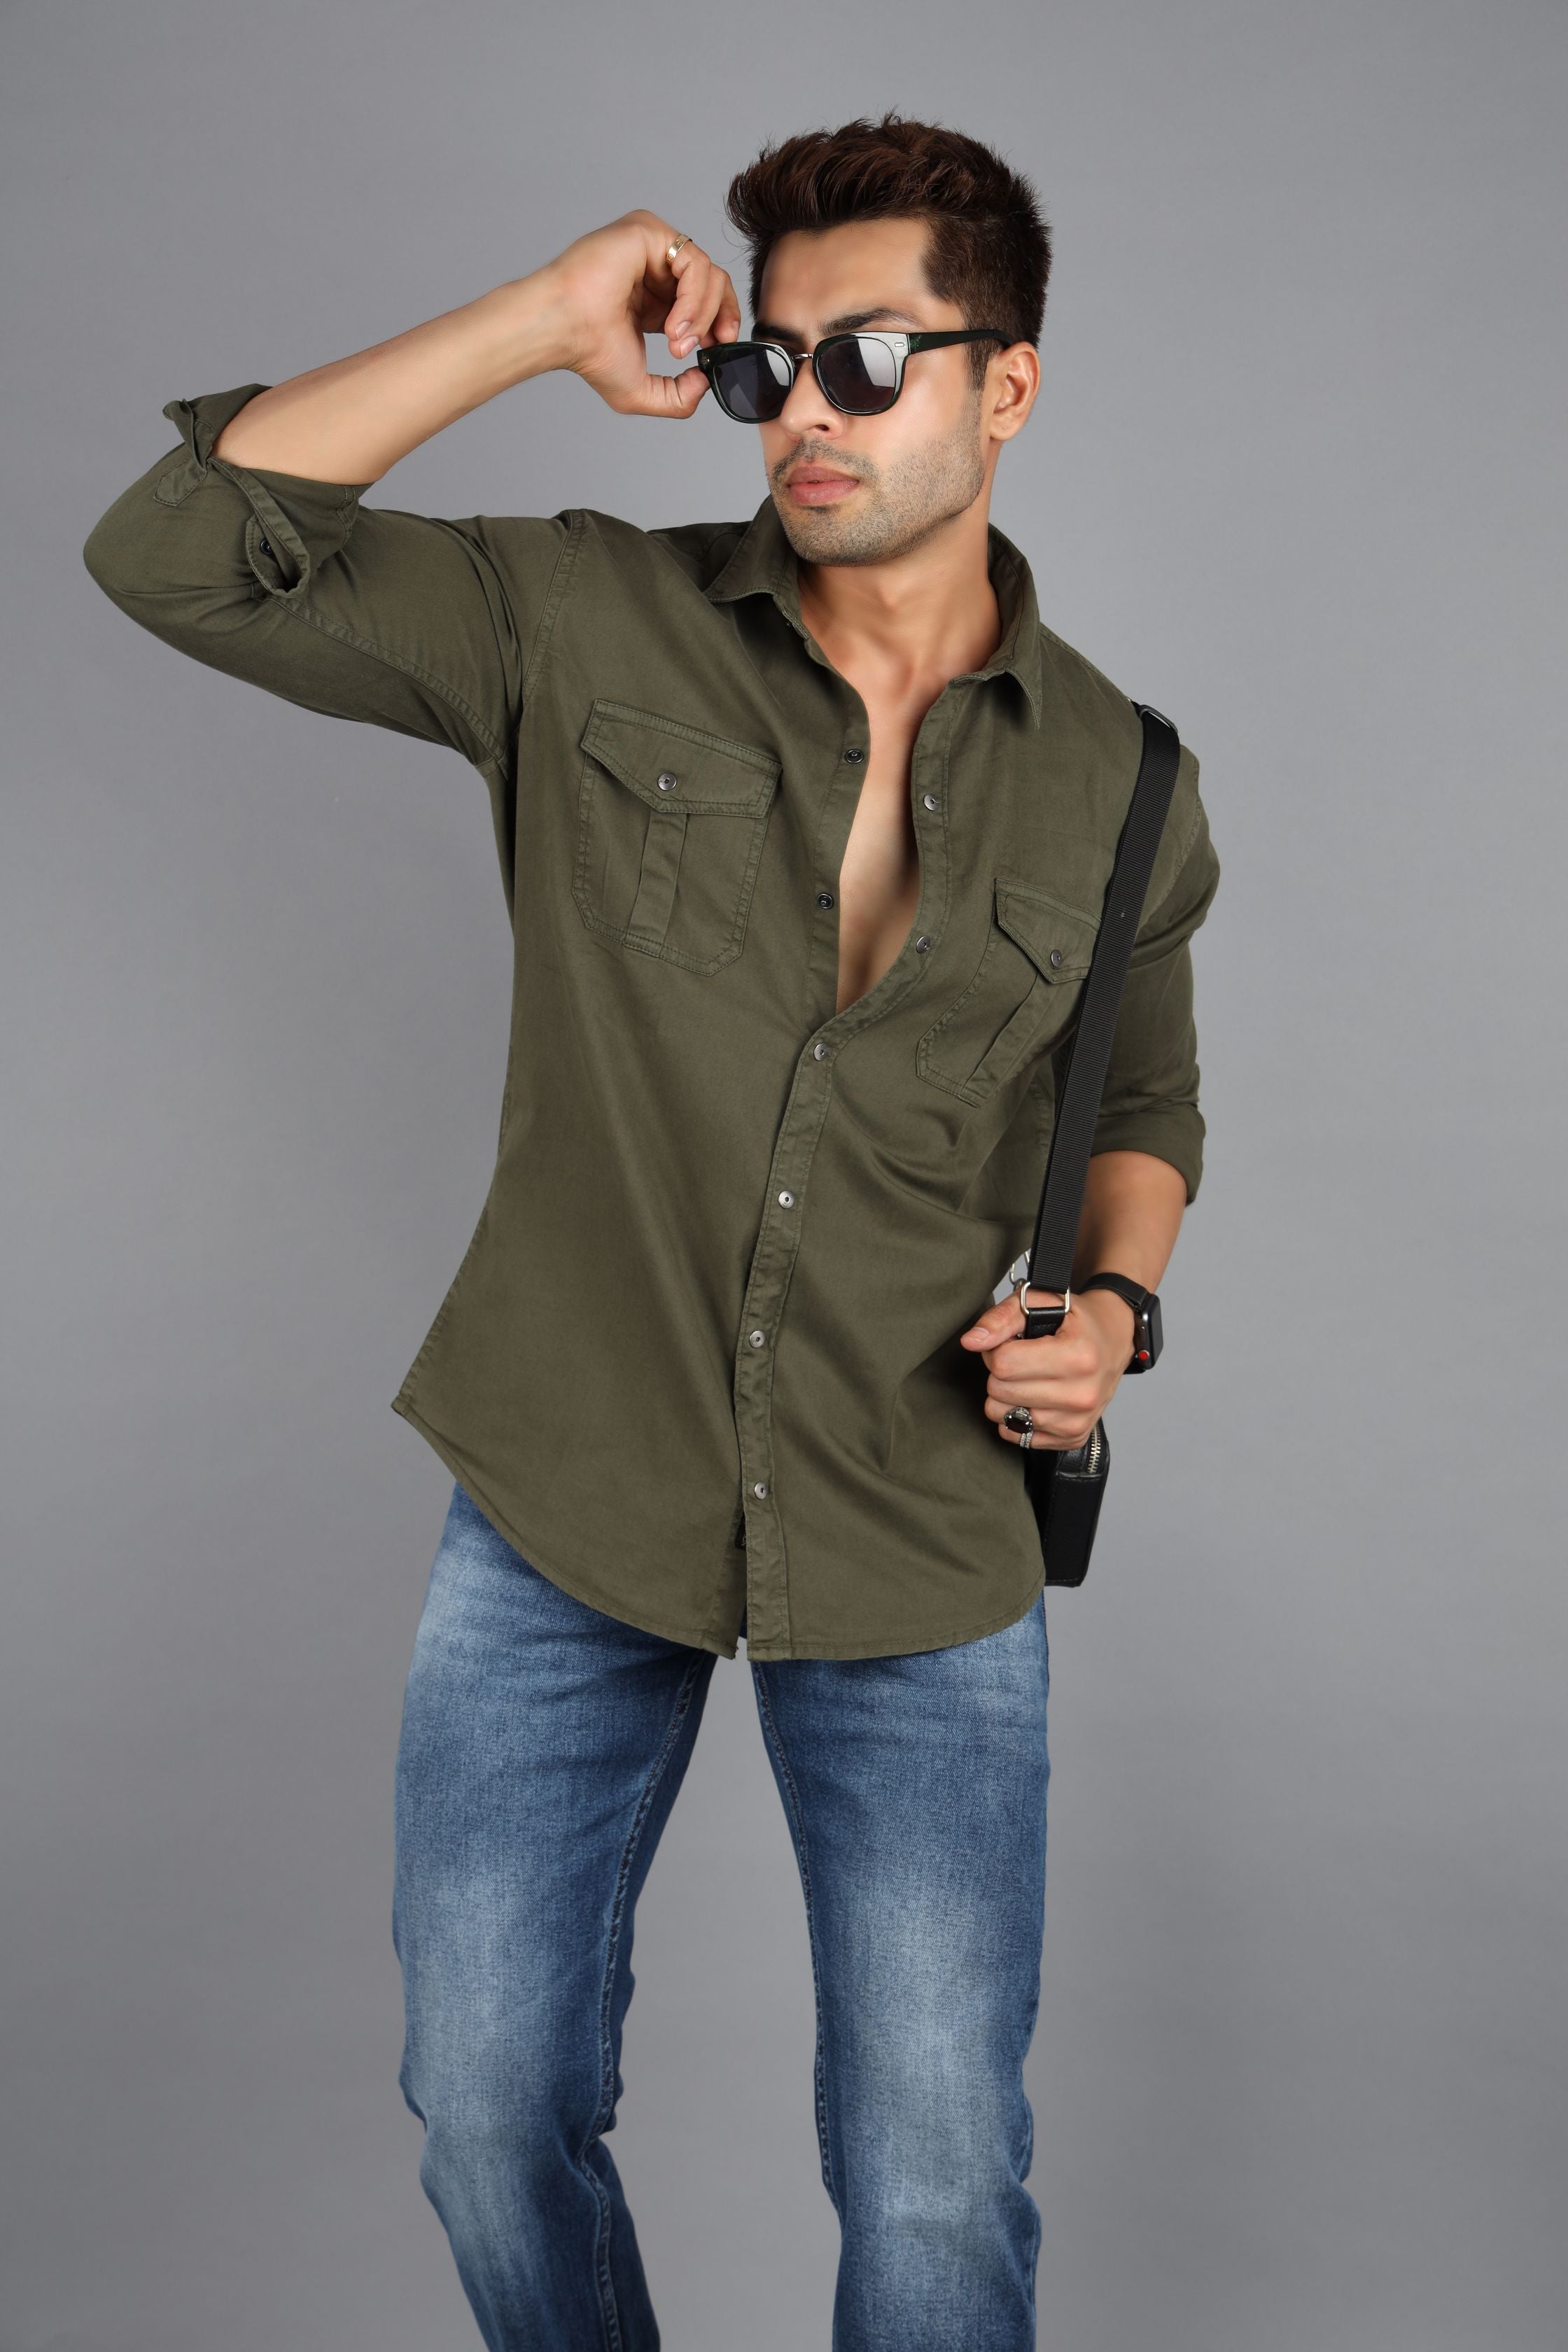 Etikmen Khaki Slimfit Real Denim Shirt with Gift Box - Trendyol